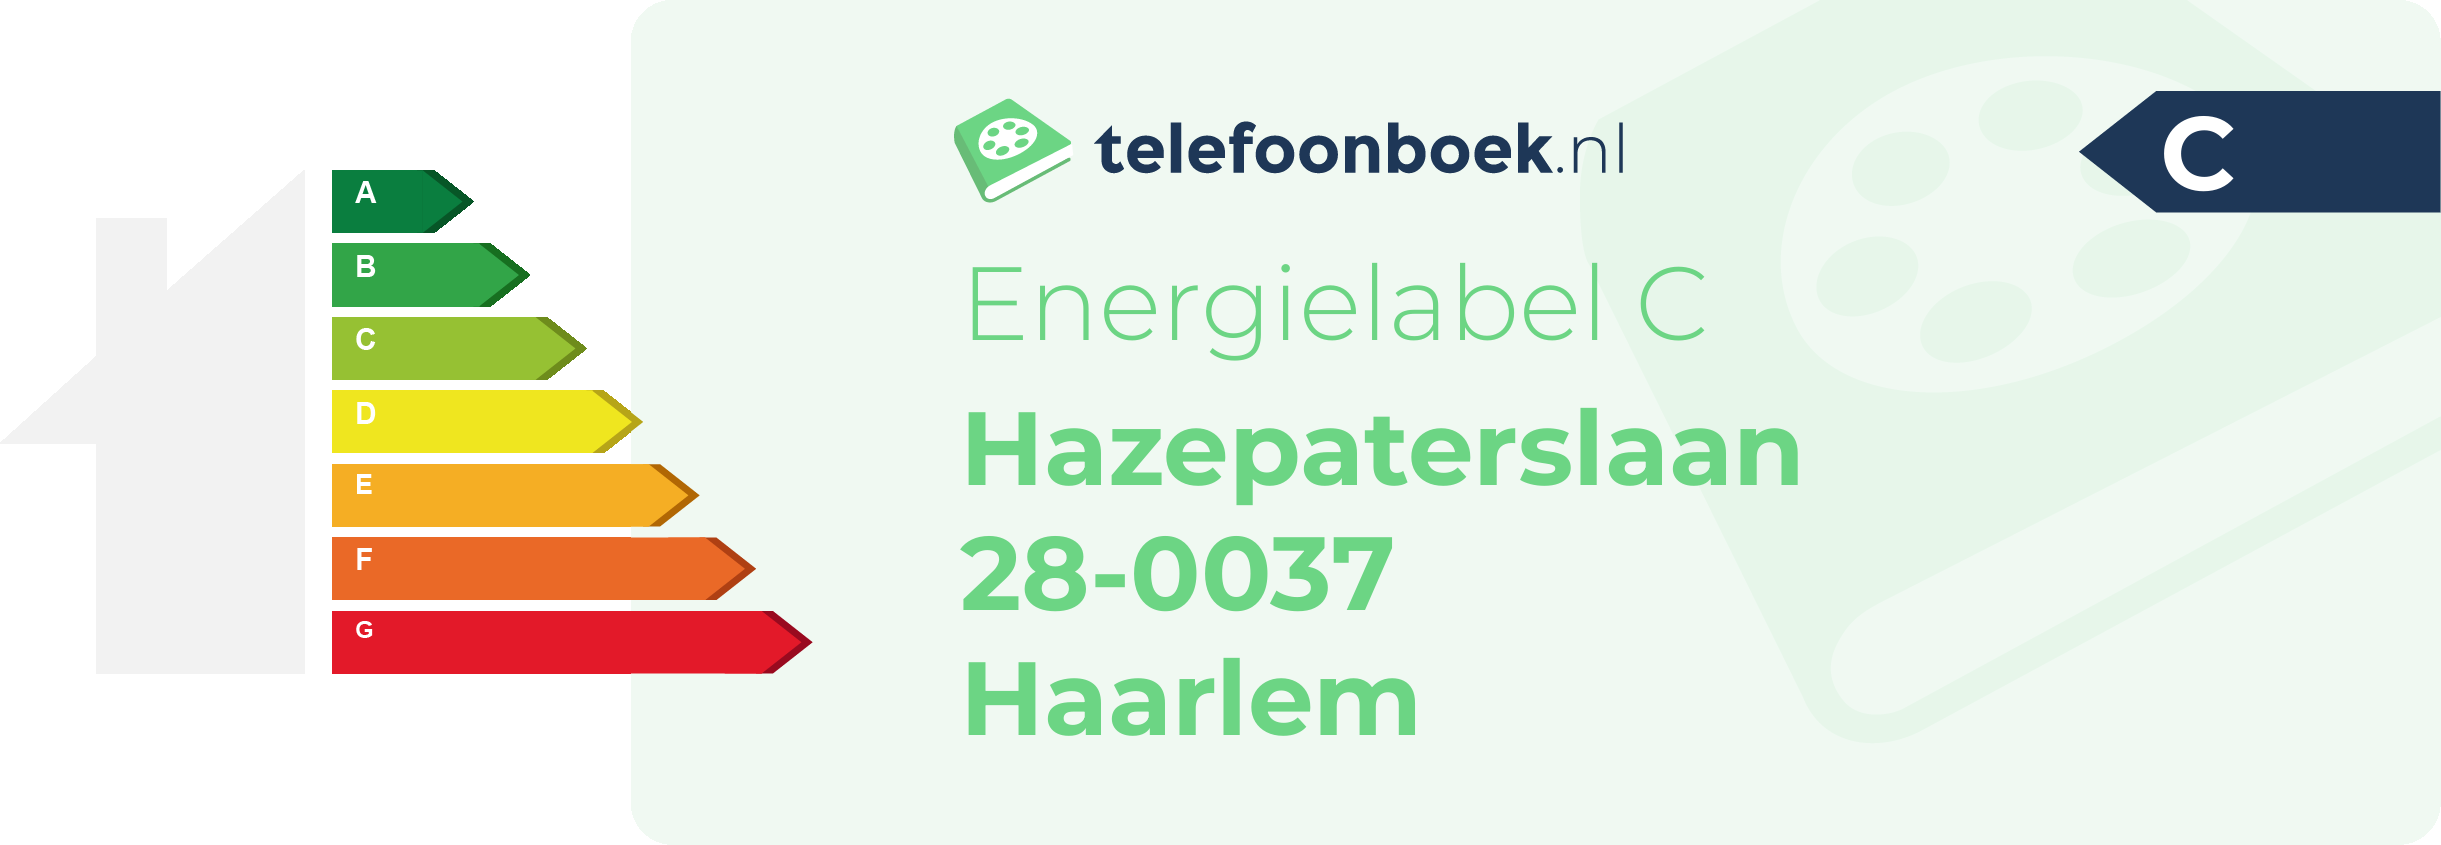 Energielabel Hazepaterslaan 28-0037 Haarlem